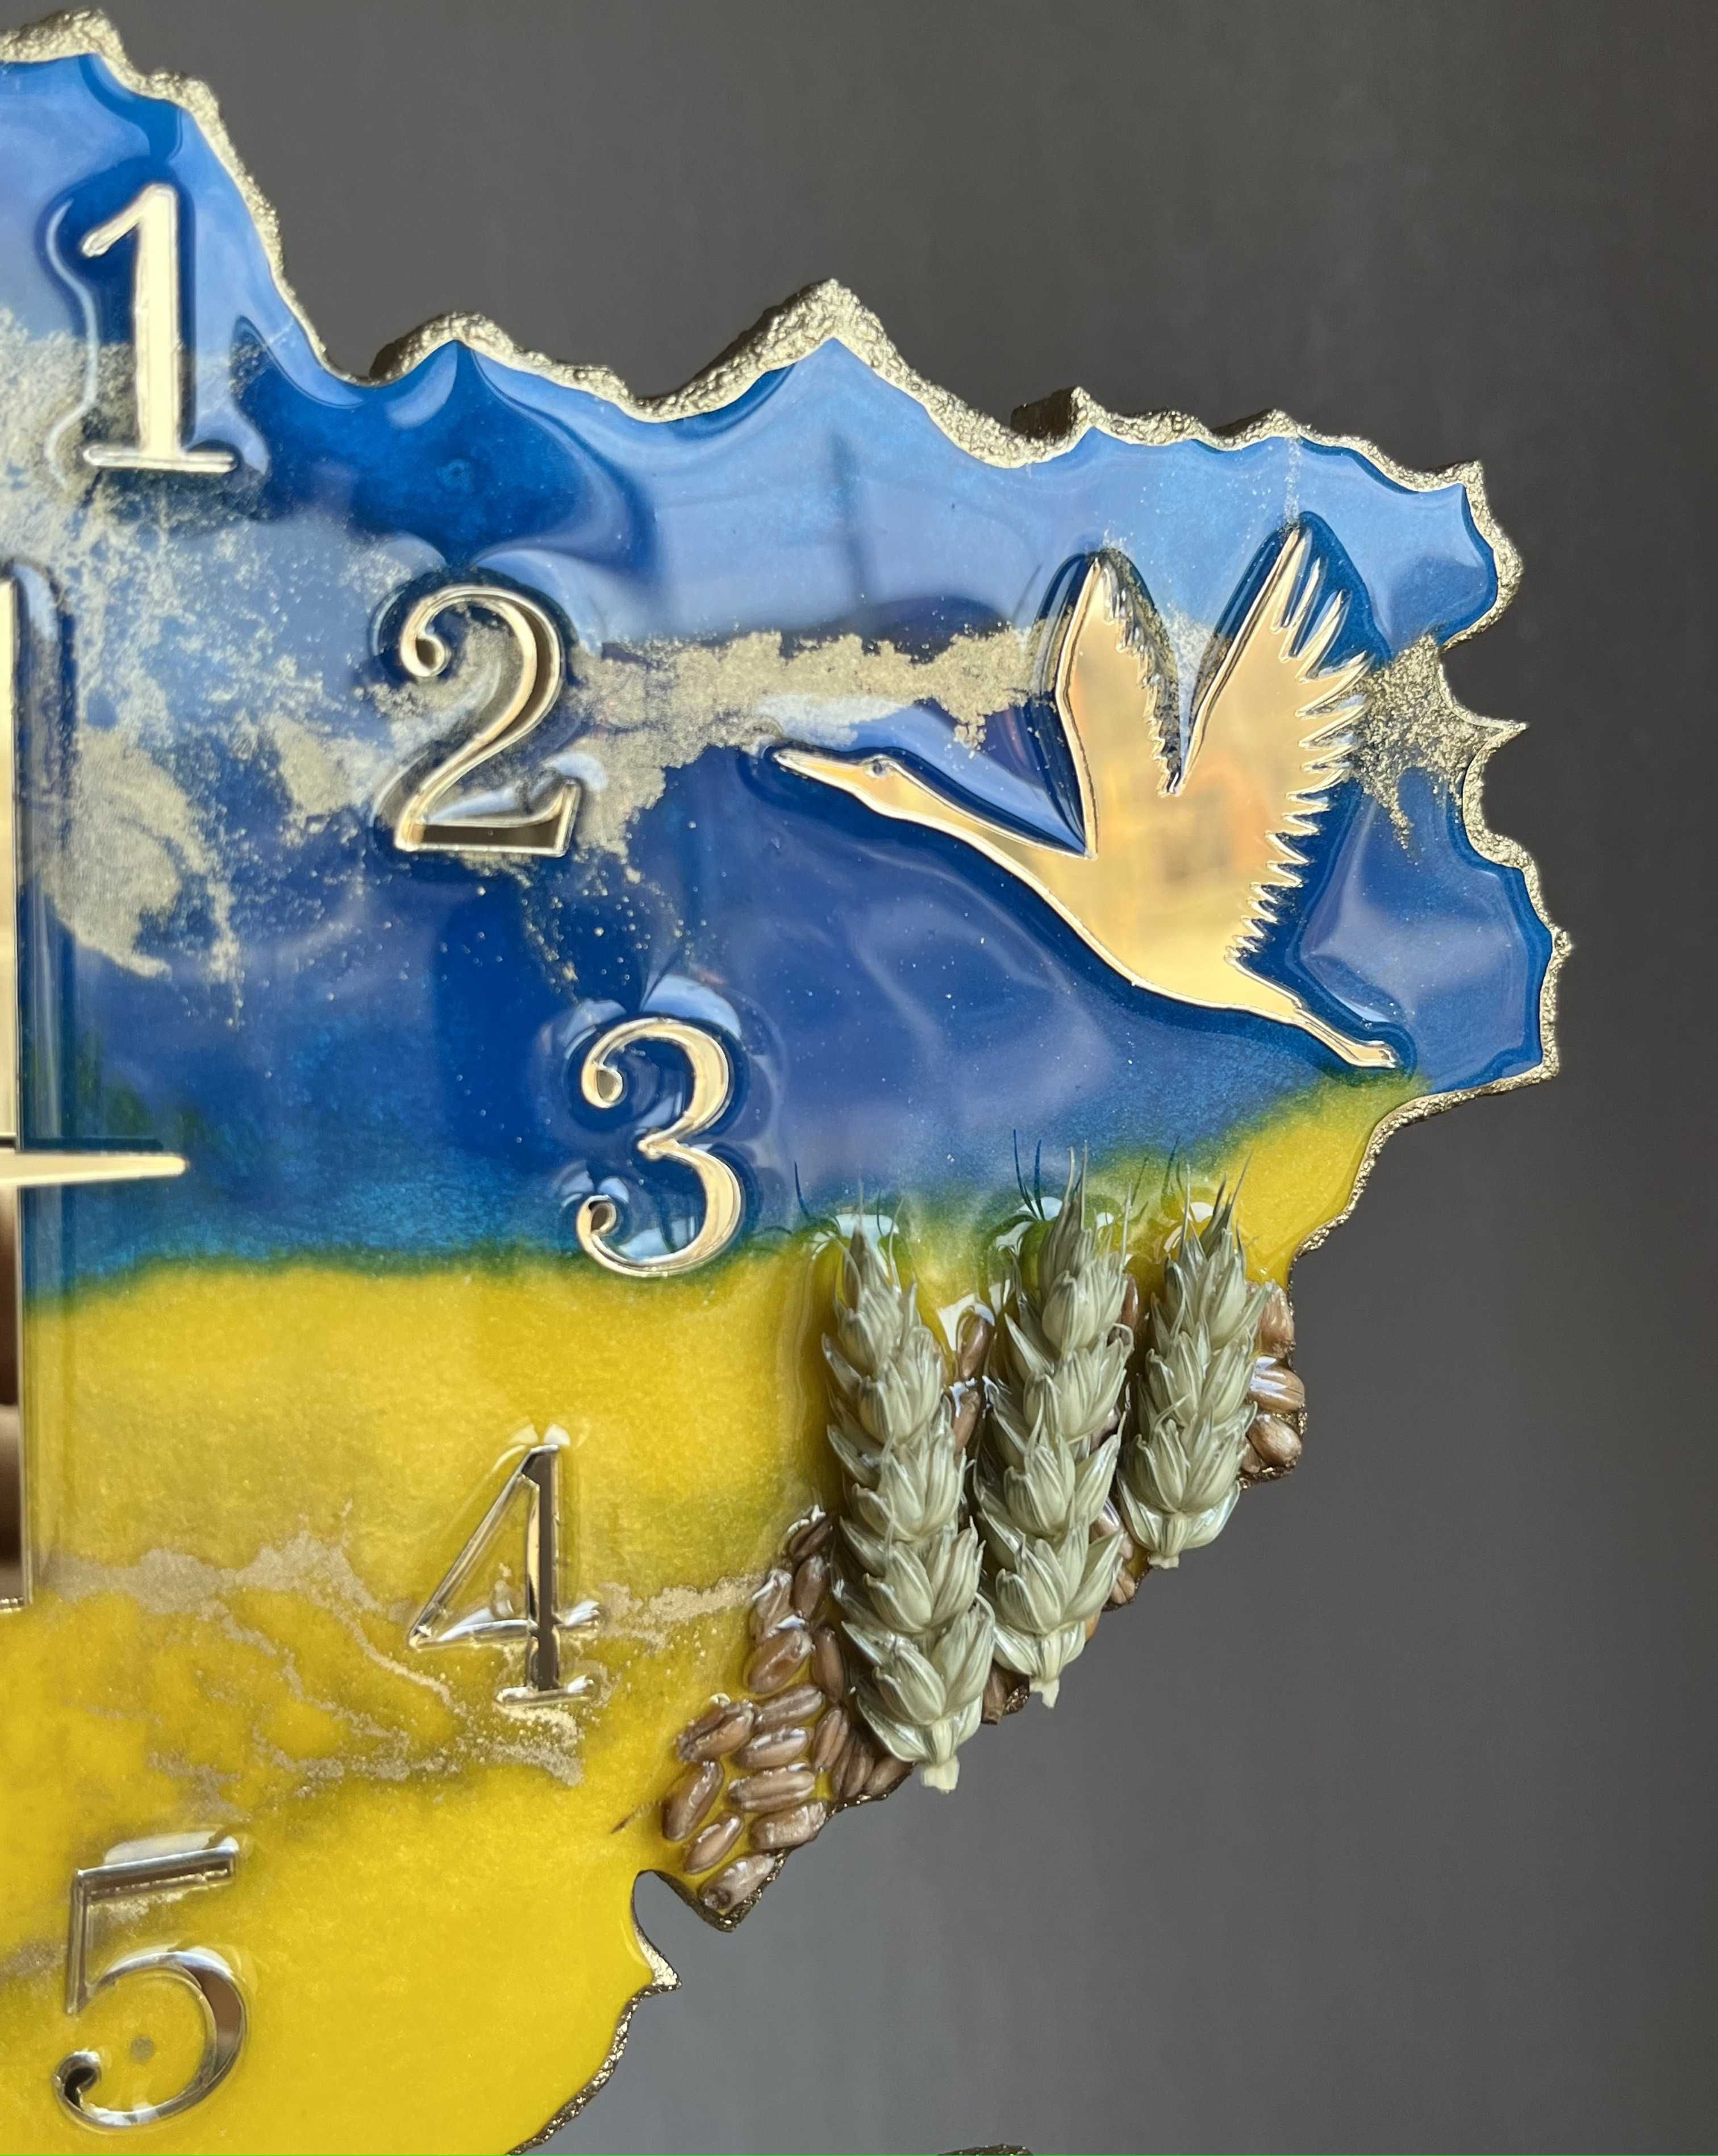 Часы в виде карты Украины , часы из эпоксидной смолы